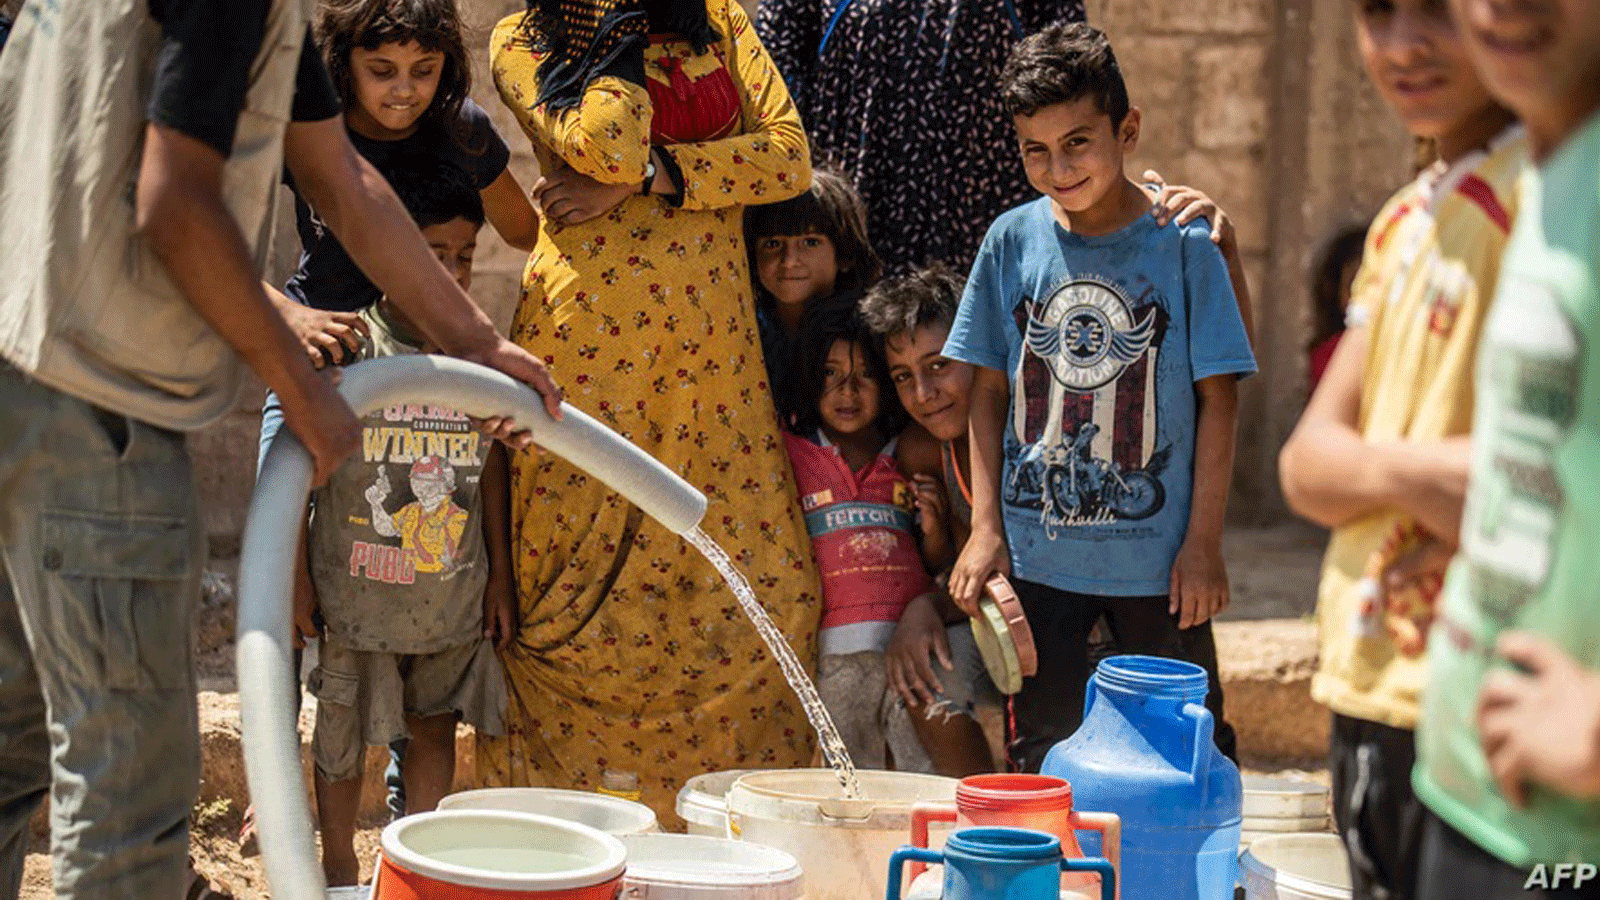 سكان يملأون دلاء بالمياه من صهاريج قدمتها منظمات إنسانية أثناء نقص المياه في مدينة الحسكة شمال شرقي سوريا. 22 آب / أغسطس 2020.